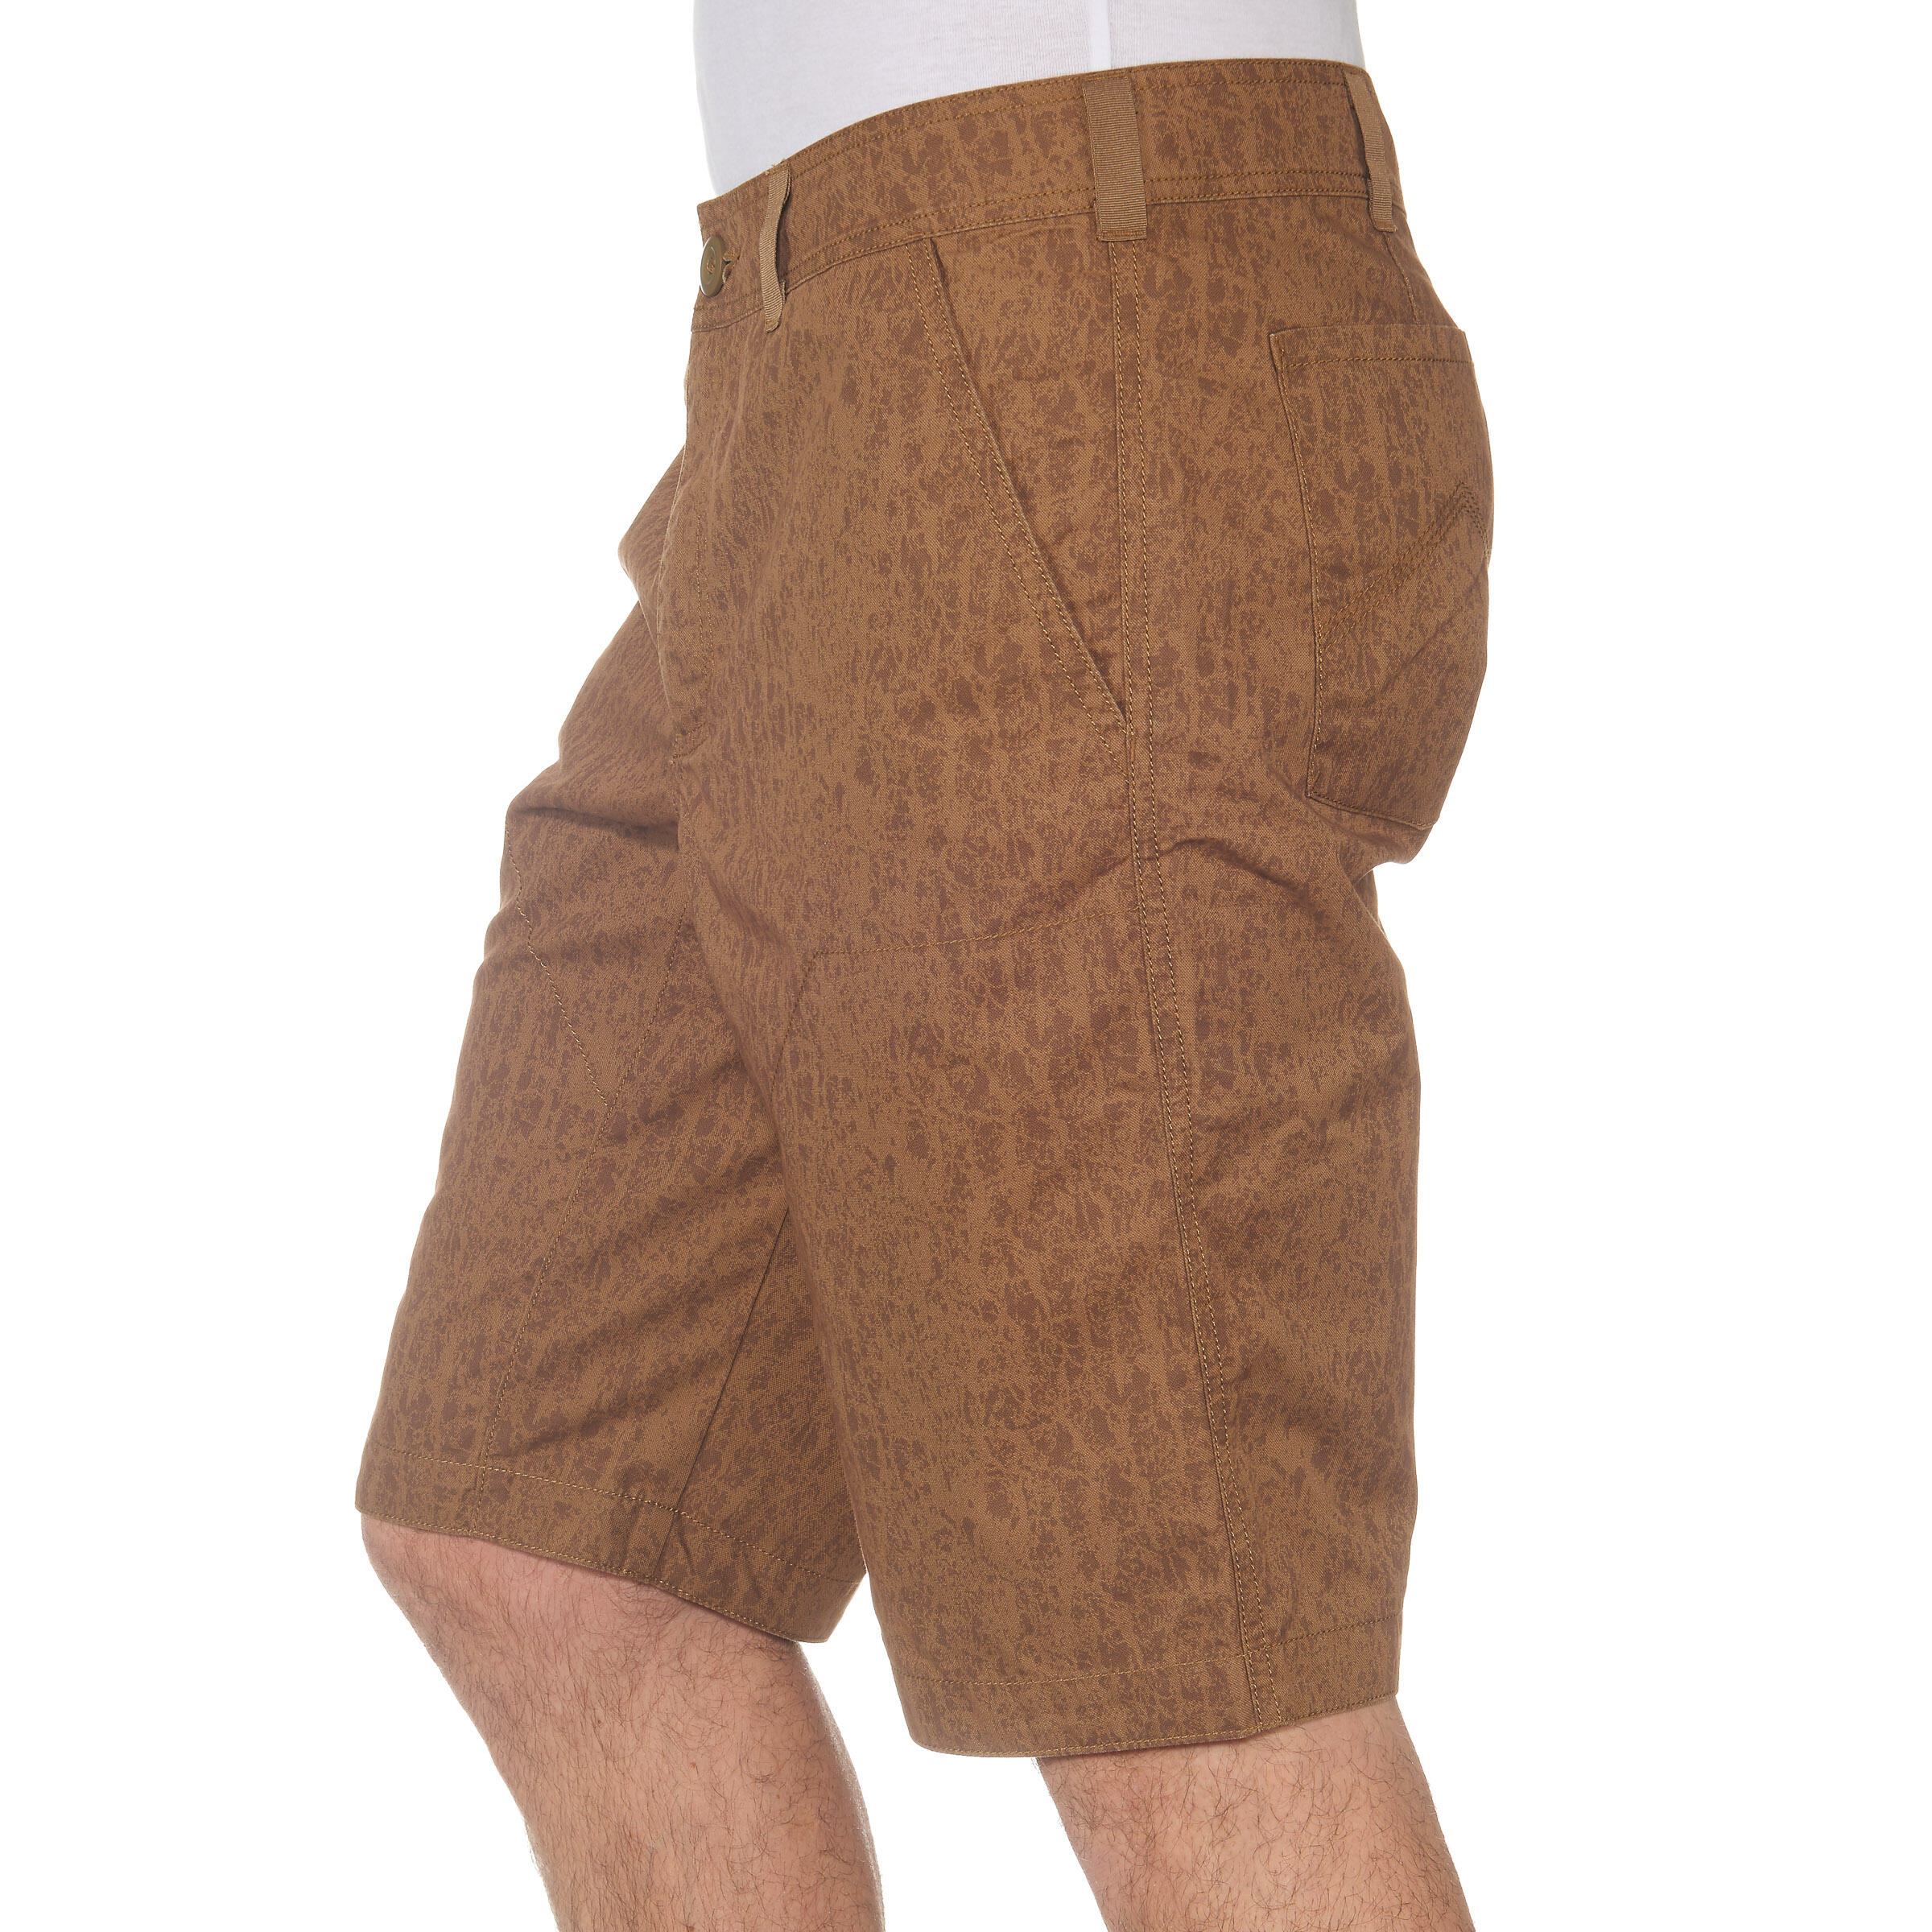 Arpenaz 100 Men's Hiking Shorts - Brown Motif 5/13